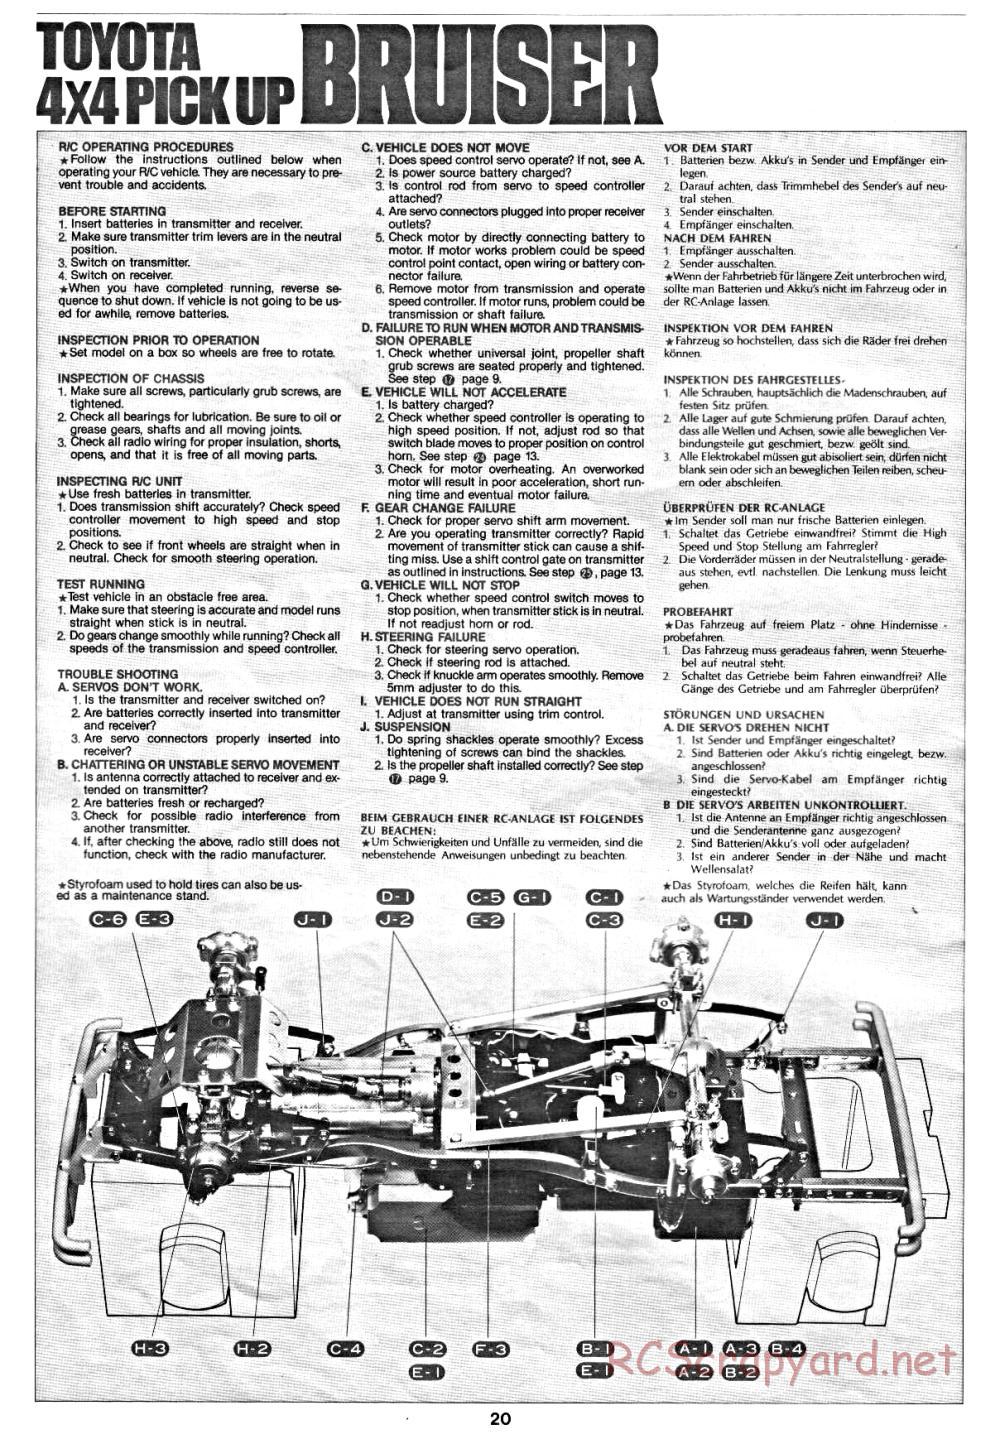 Tamiya - Toyota 4x4 Pick-Up Bruiser - 58048 - Manual - Page 20